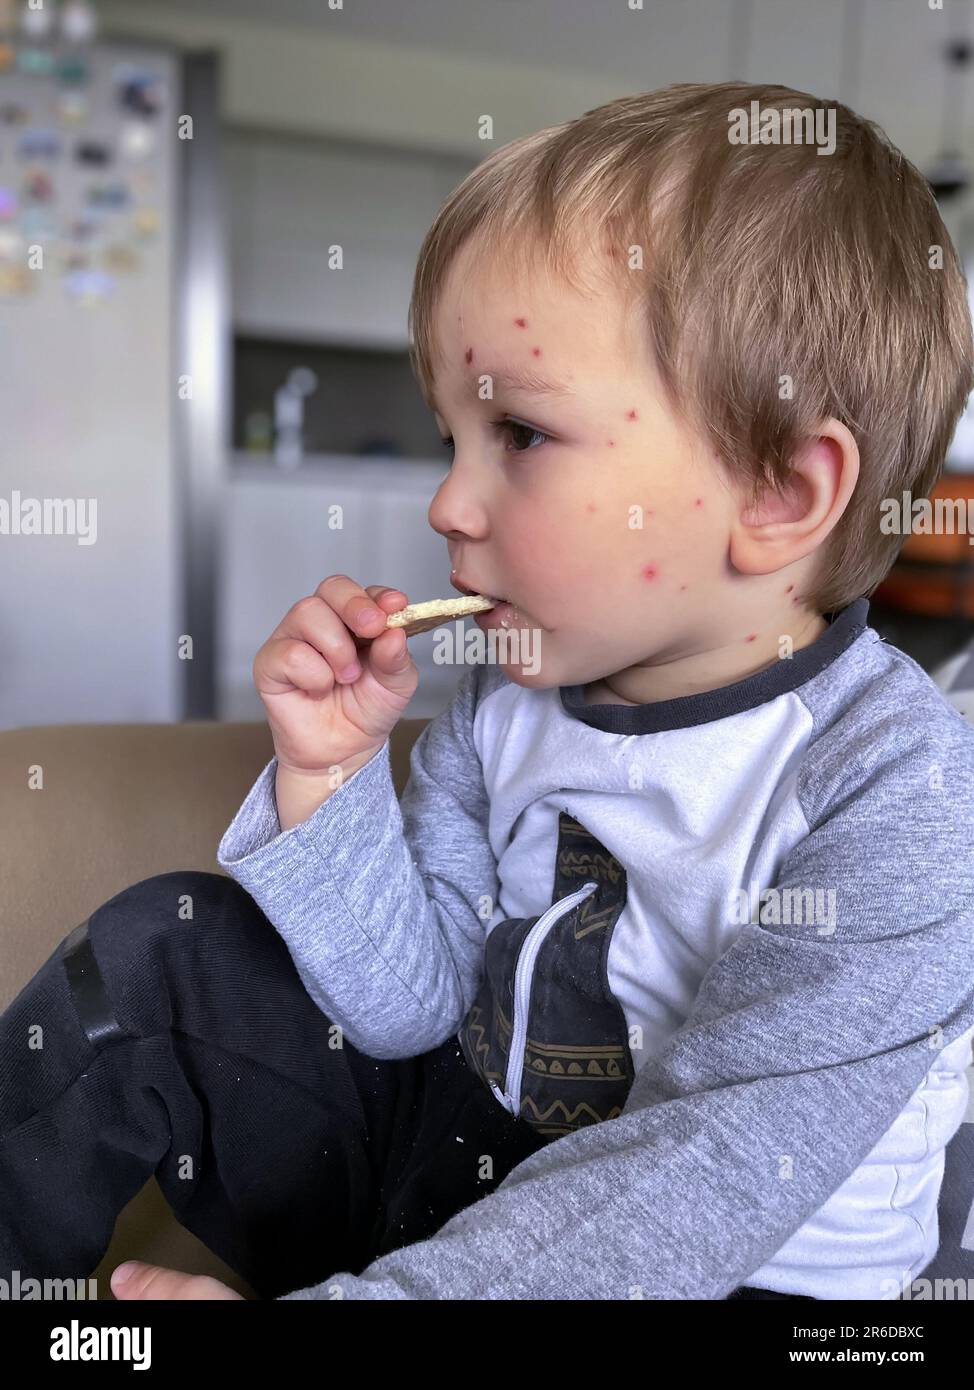 Ritratto del bambino piccolo con la varicella che mangia i biscotti Foto Stock